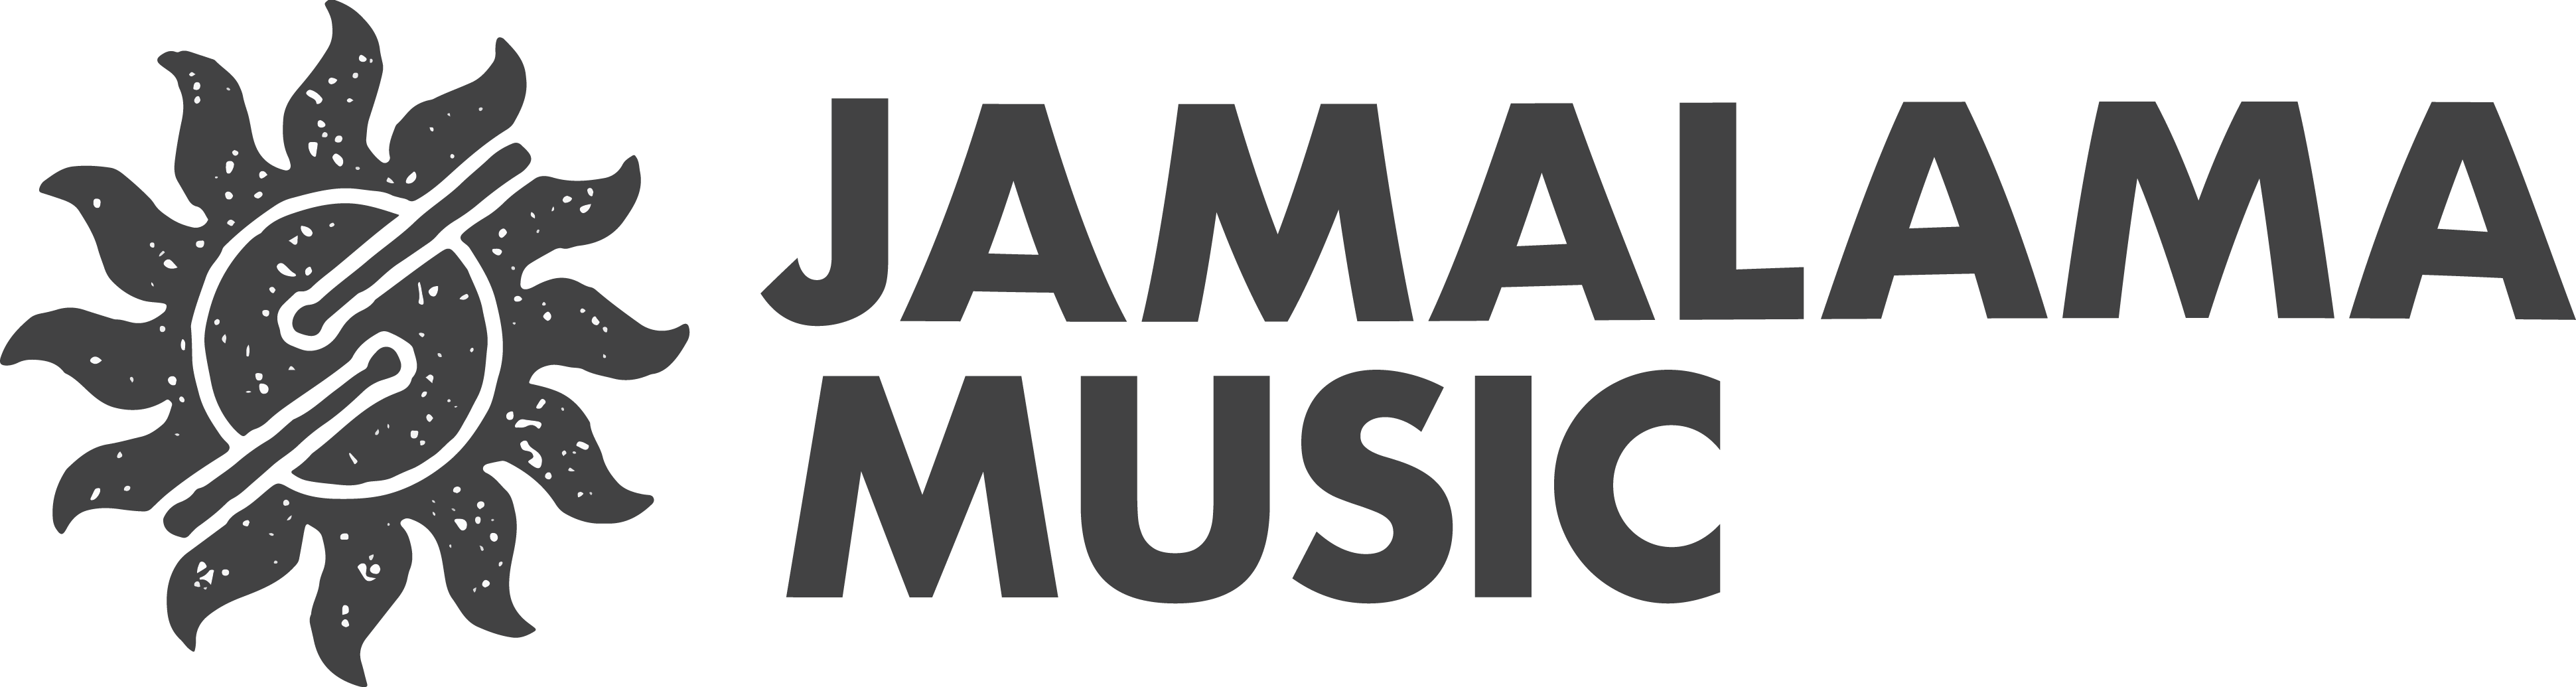 JAMALAMA MUSIC